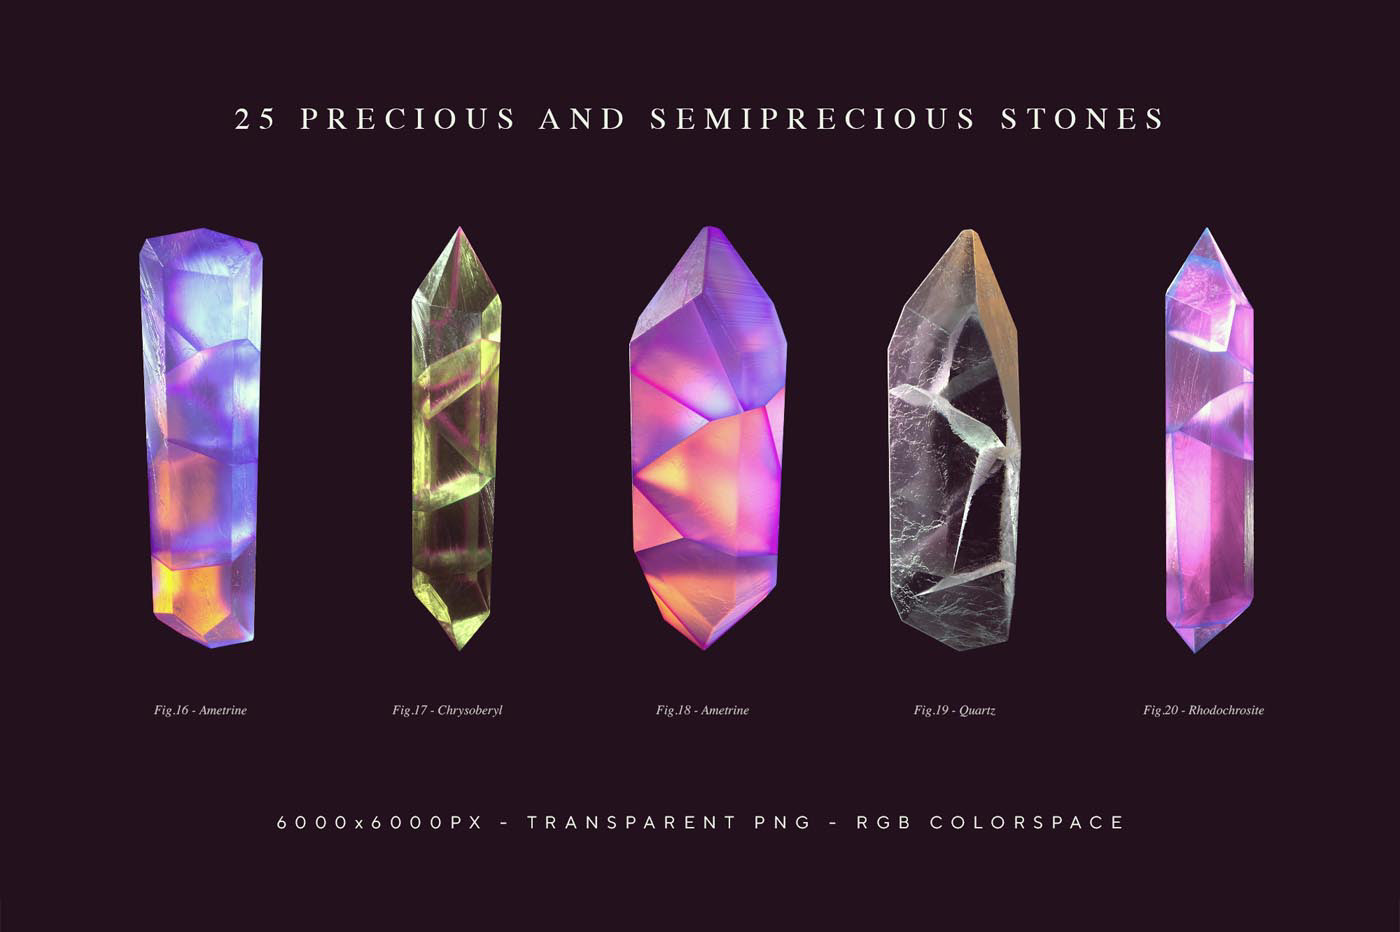 crystal crystals gemstones geode minerals quartz Sphene stones tanzanite Zircon